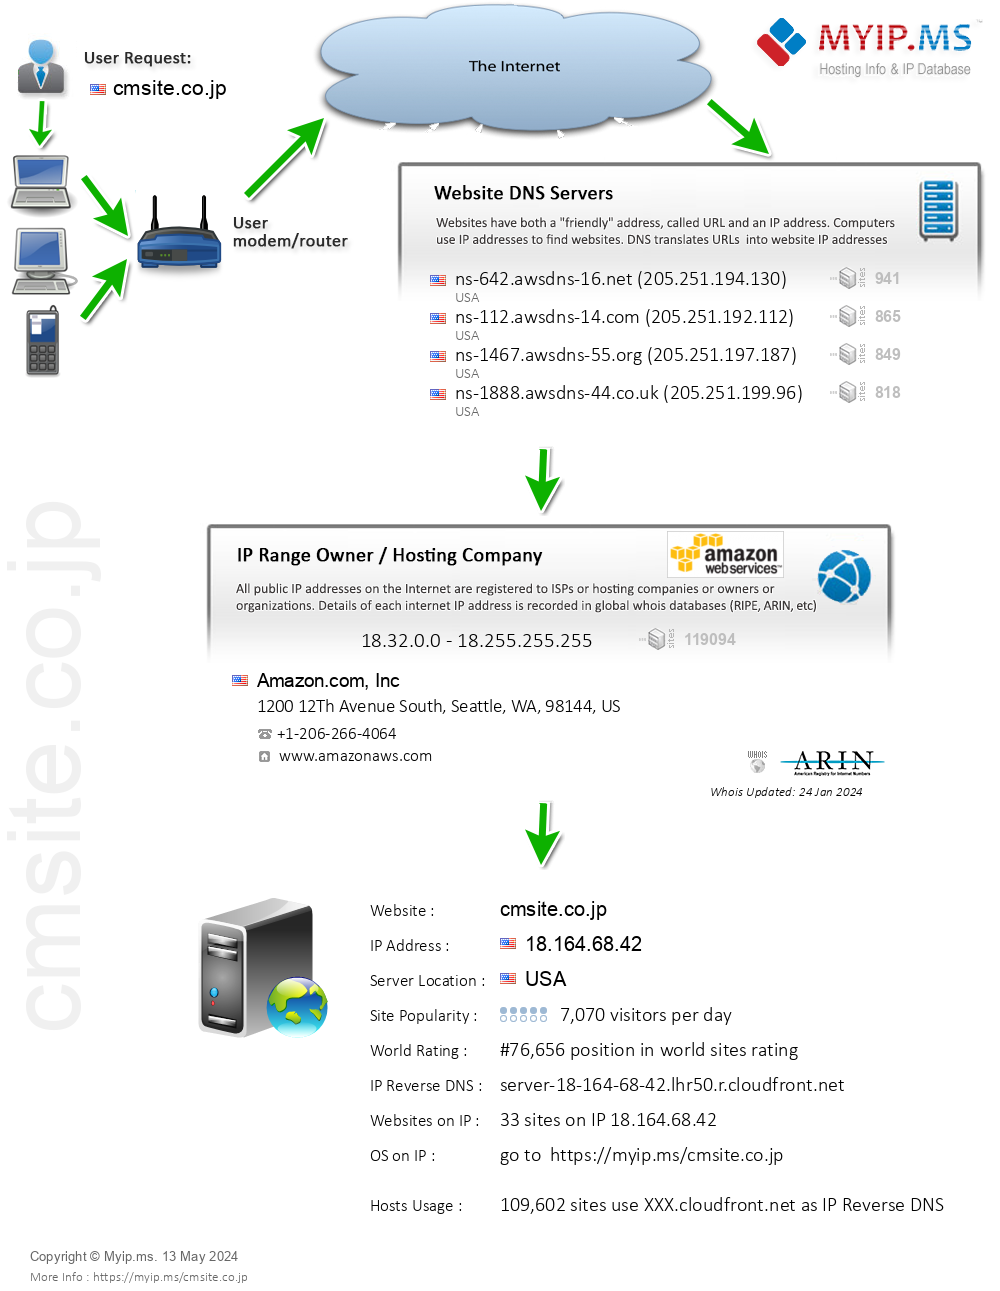 Cmsite.co.jp - Website Hosting Visual IP Diagram